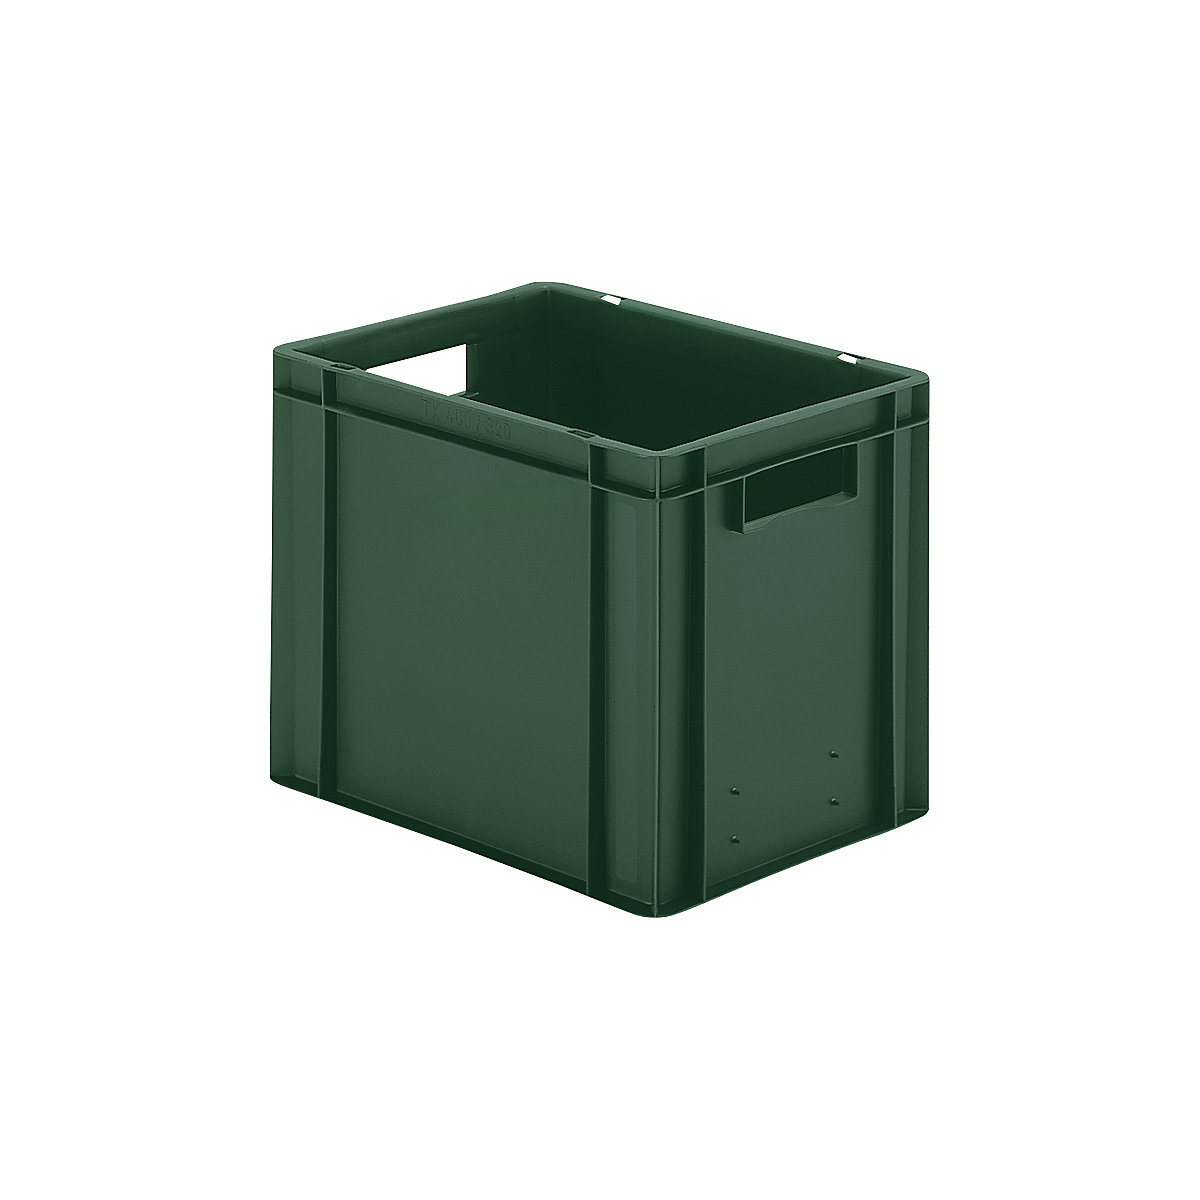 Euro-Format-Stapelbehälter, Wände und Boden geschlossen, LxBxH 400 x 300 x 320 mm, grün, VE 5 Stk